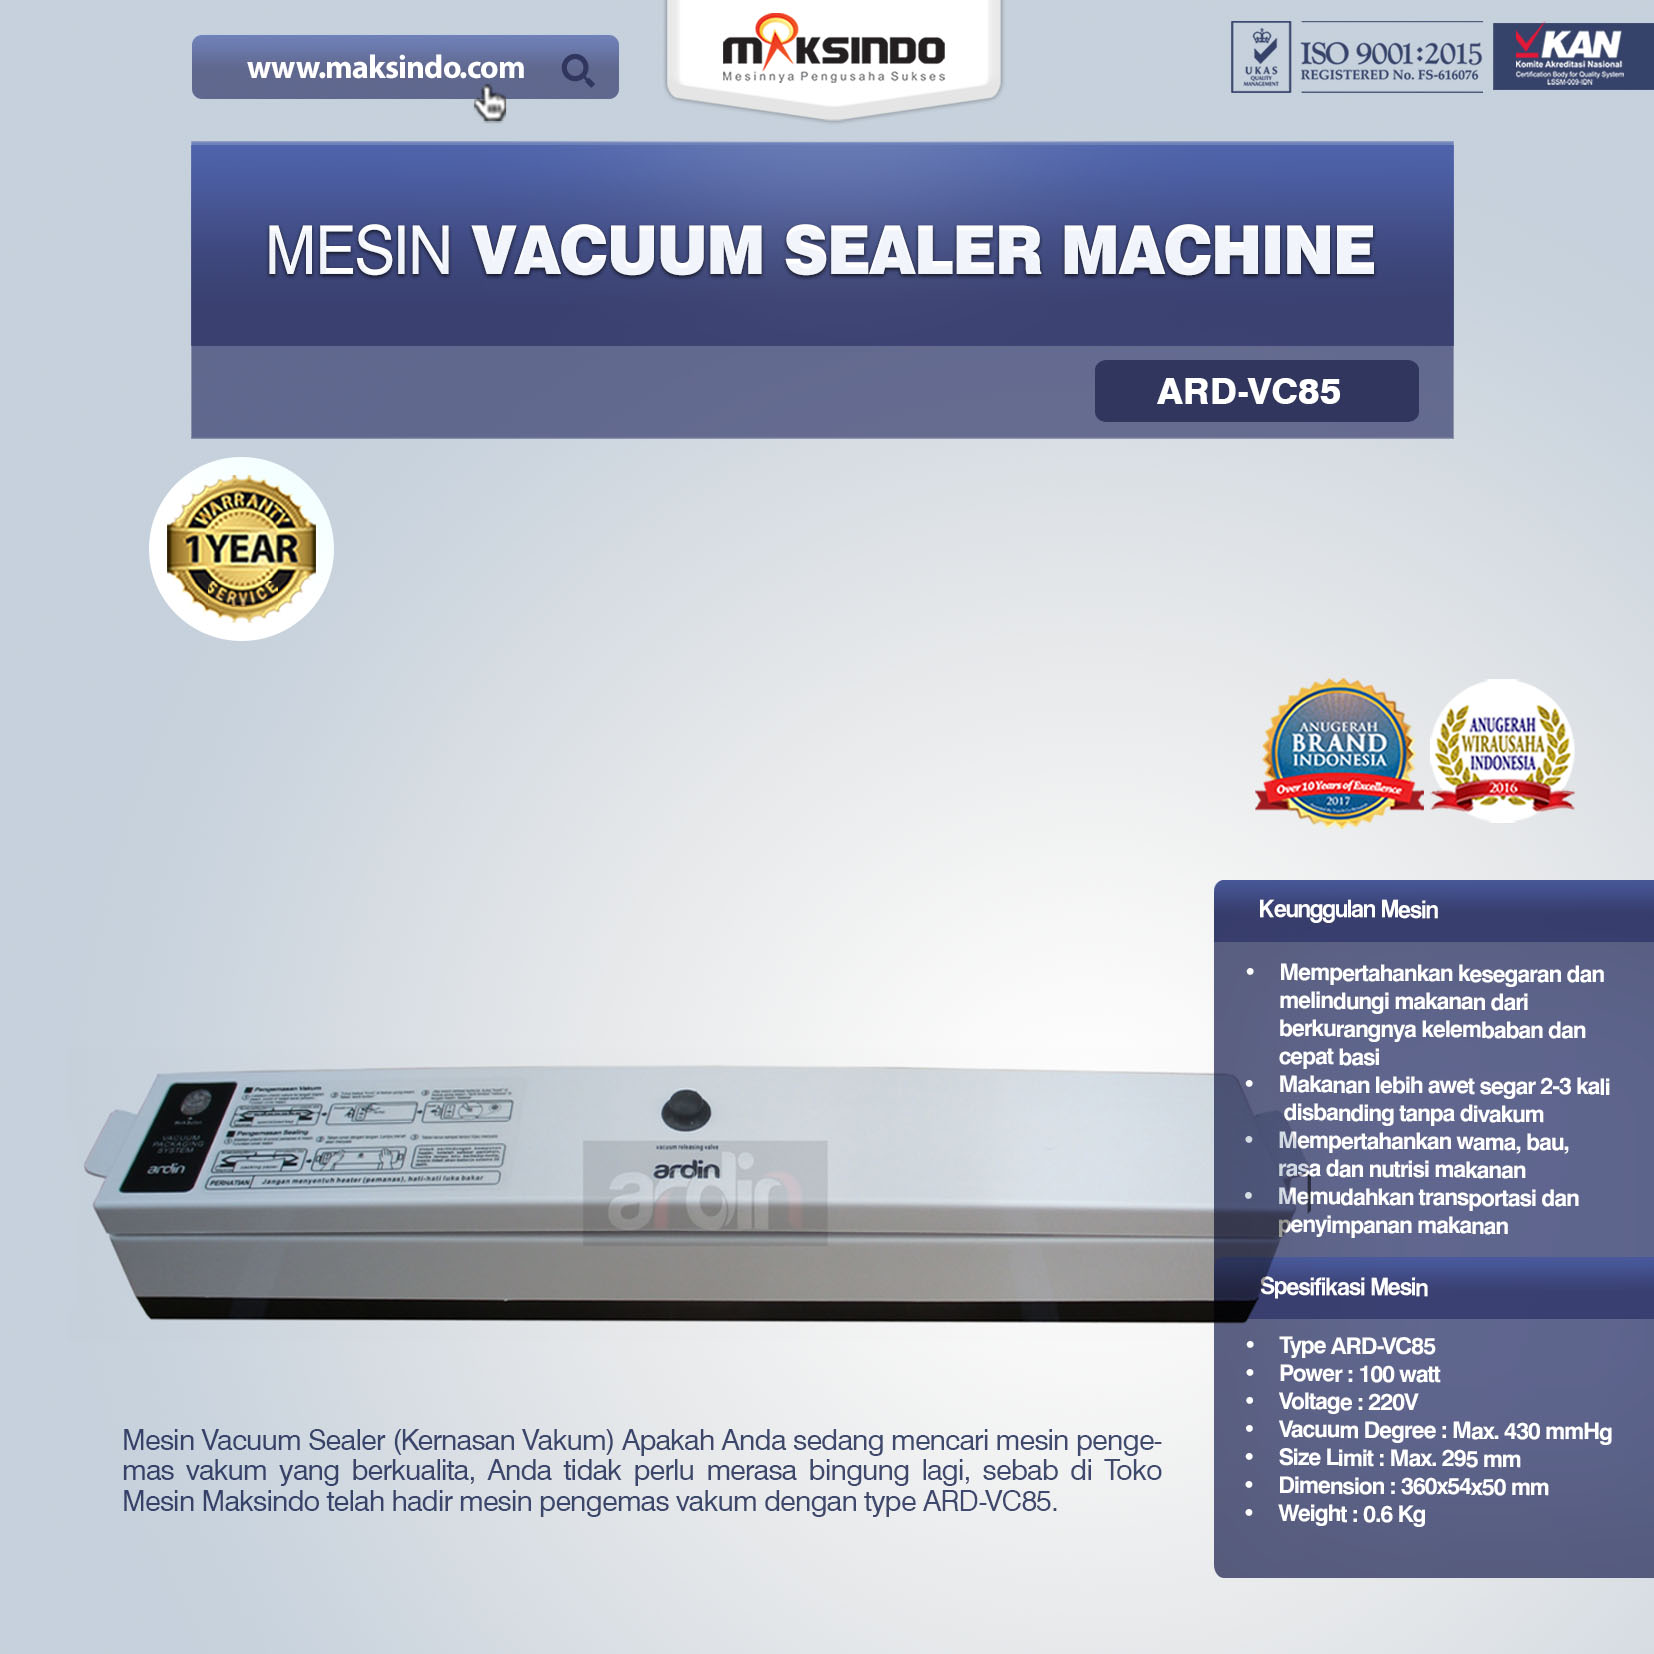 Jual Mesin Vacuum Sealer Machine ARD-VC85 di Malang